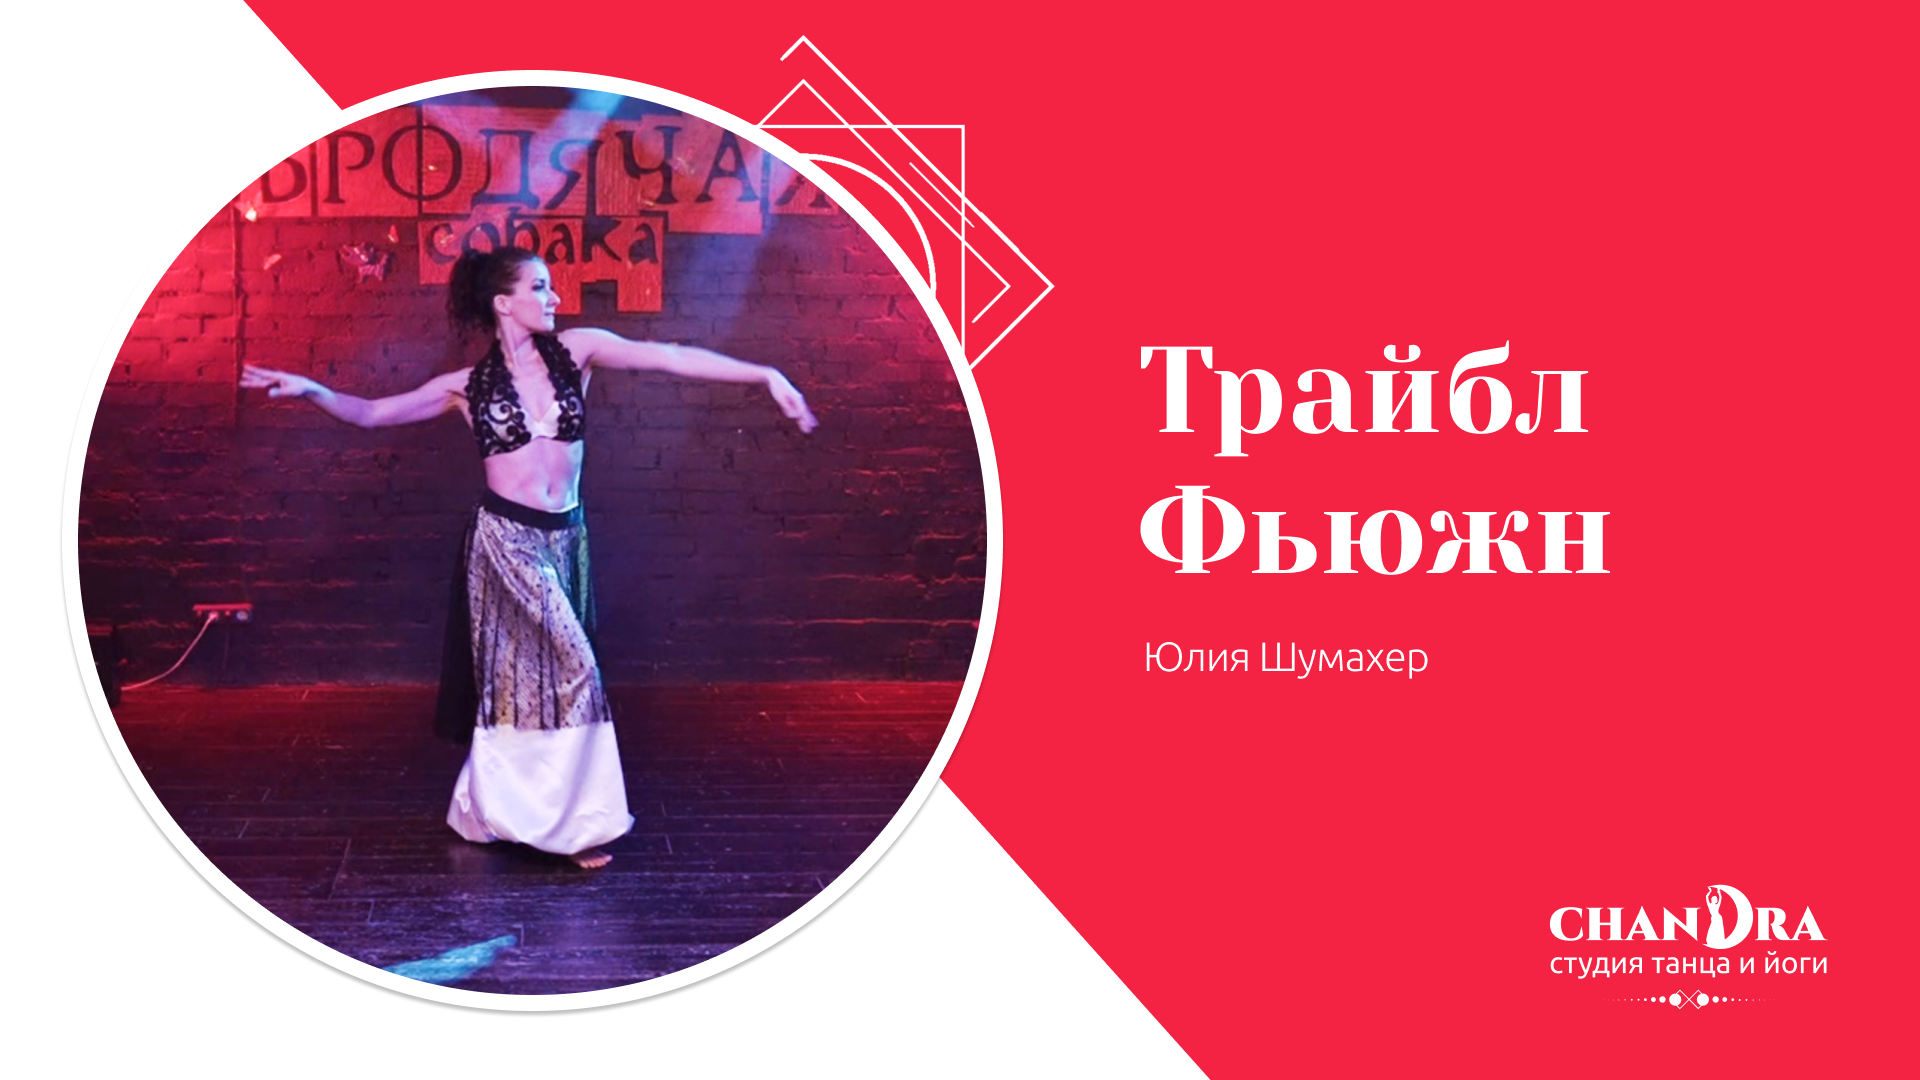 Студия танца и йоги в Новосибирске Chandra. Отчетный концерт '24: Tribal Fusion, Юлия Шумахер.